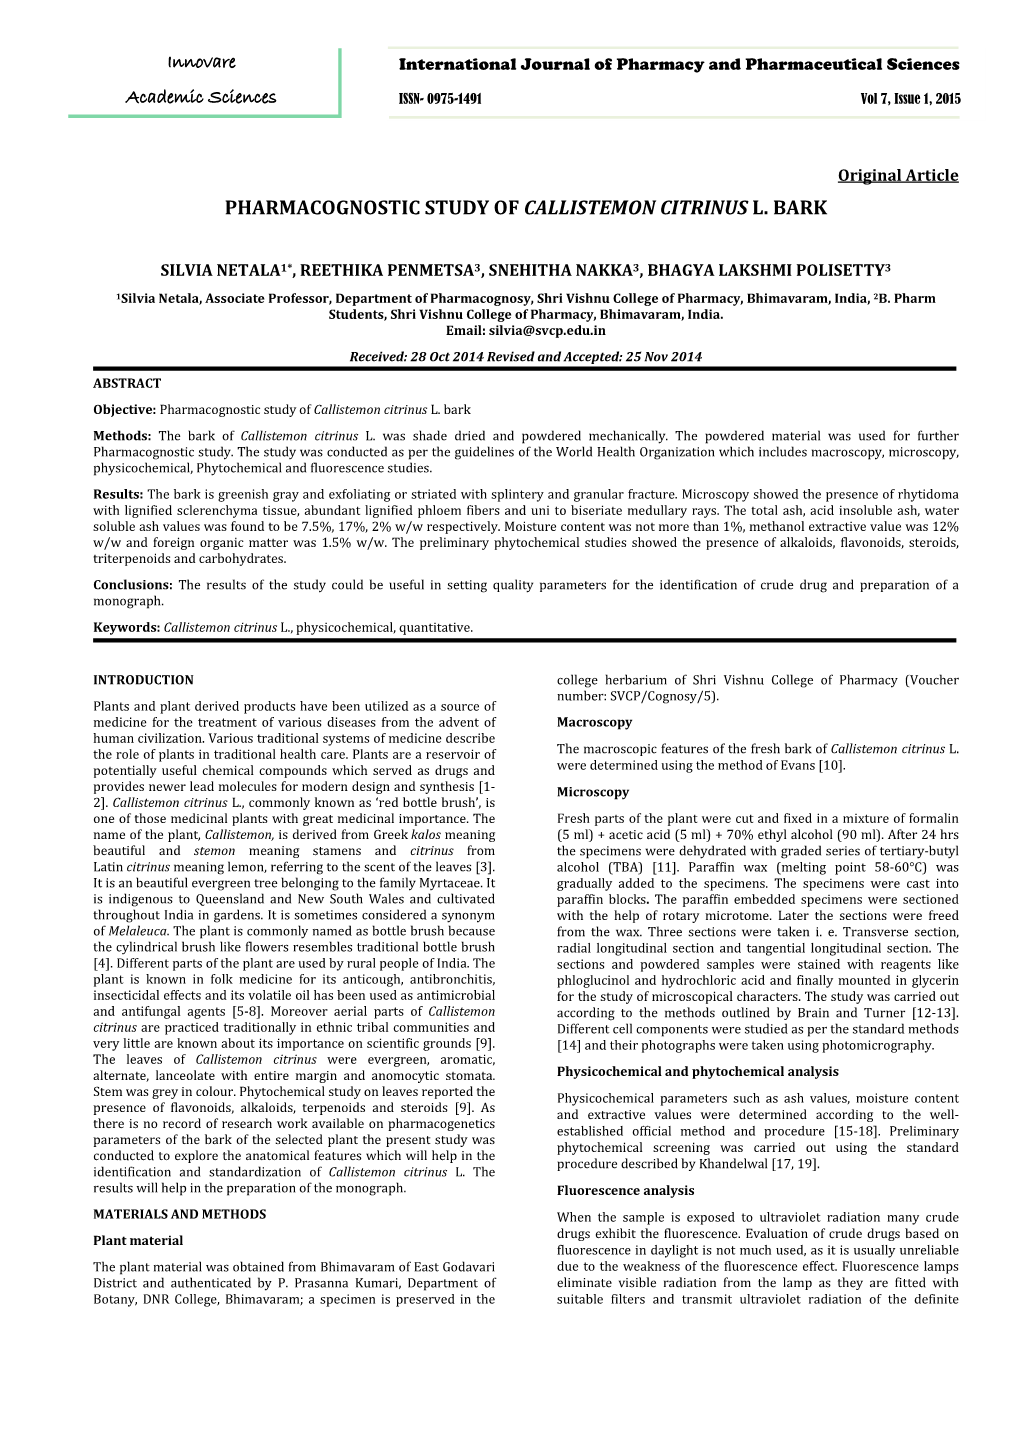 Pharmacognostic Study of Callistemon Citrinus L. Bark